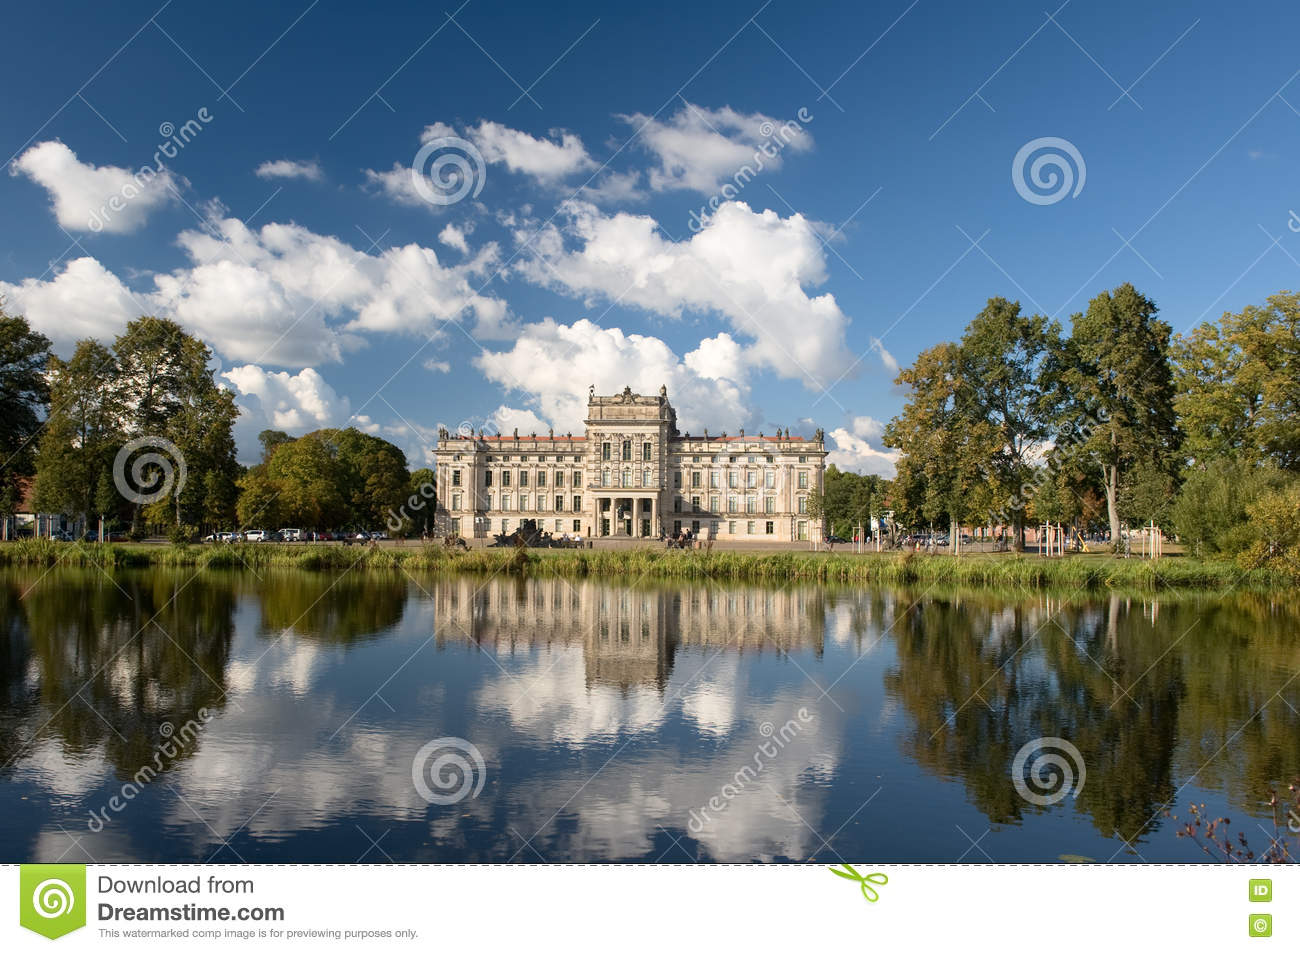 Images of Ludwigslust Palace | 1300x953